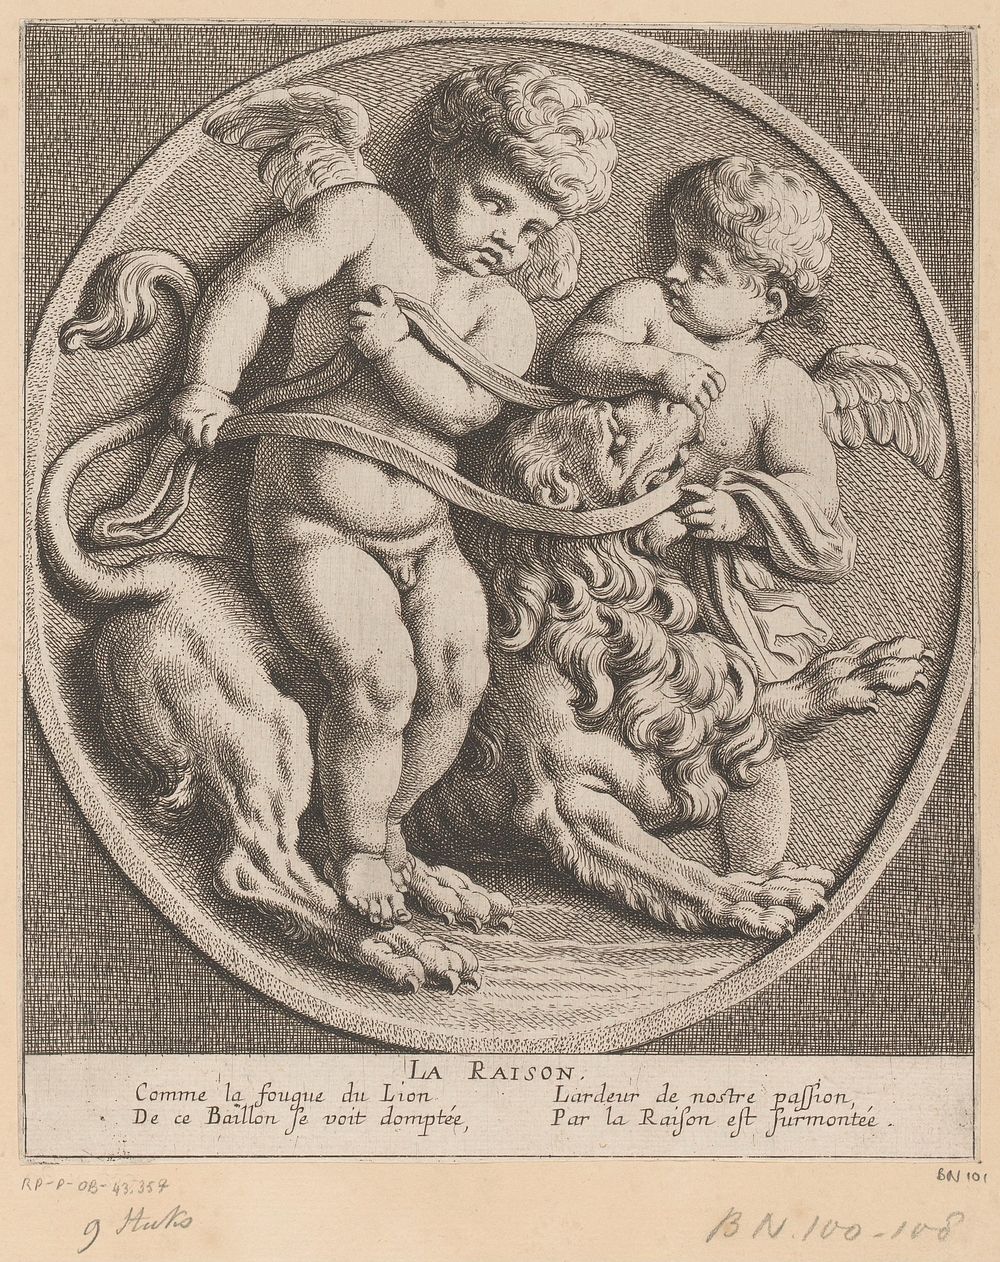 Twee putti met een leeuw (1654) by Louis Ferdinand I Elle, Gerard van Opstal, Tetelin, Jacques van Merlen and Lodewijk XIV…